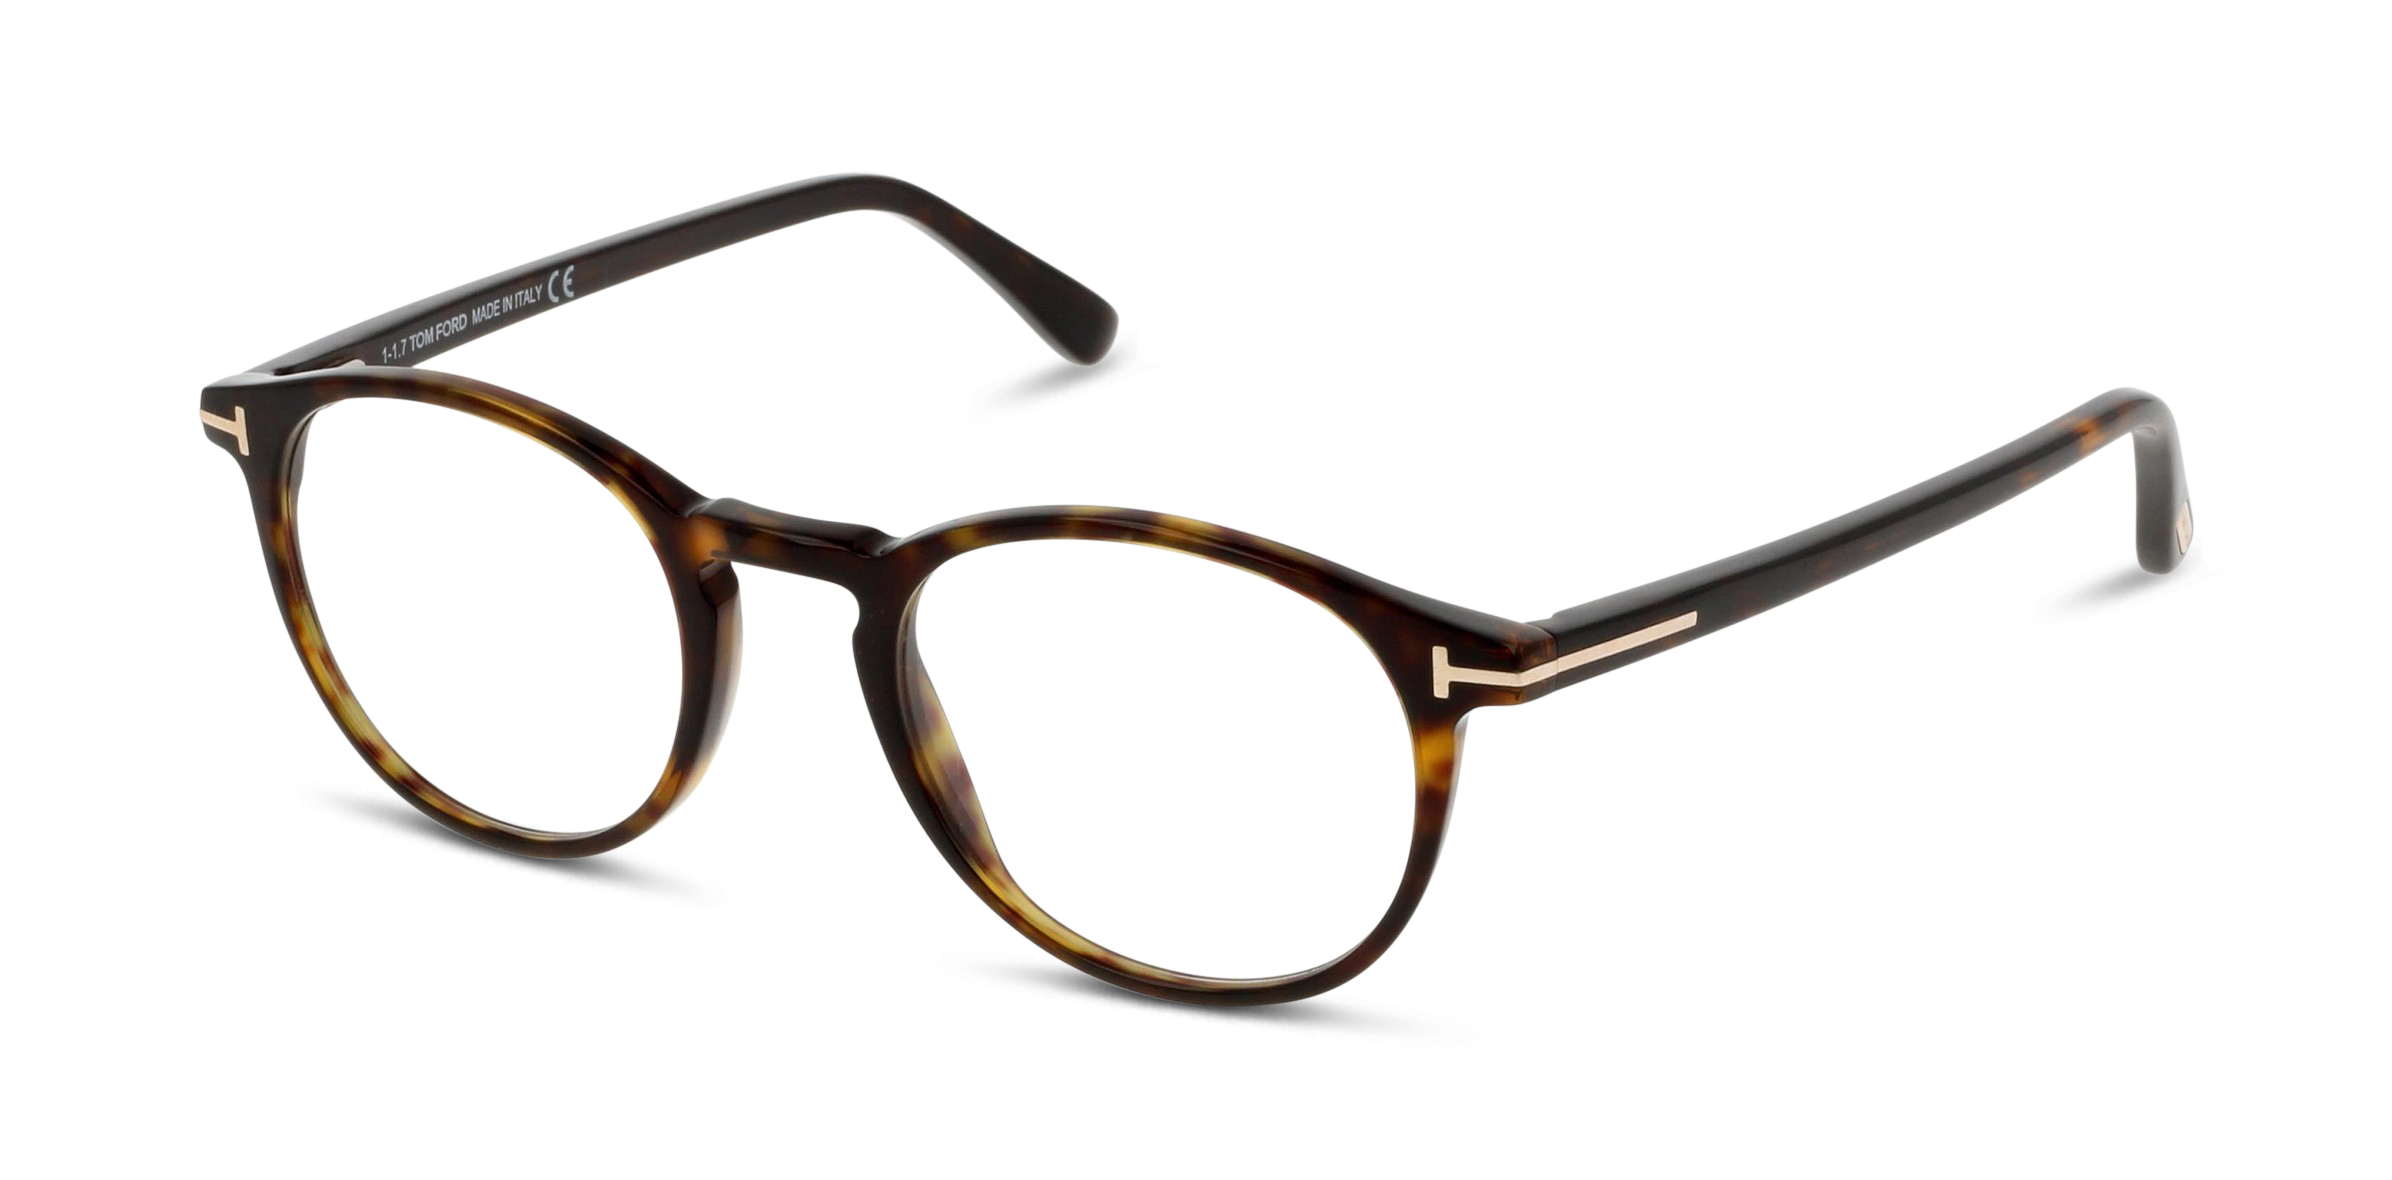 Angle_Left01 Tom Ford FT 5294 (056) Glasses Transparent / Tortoise Shell